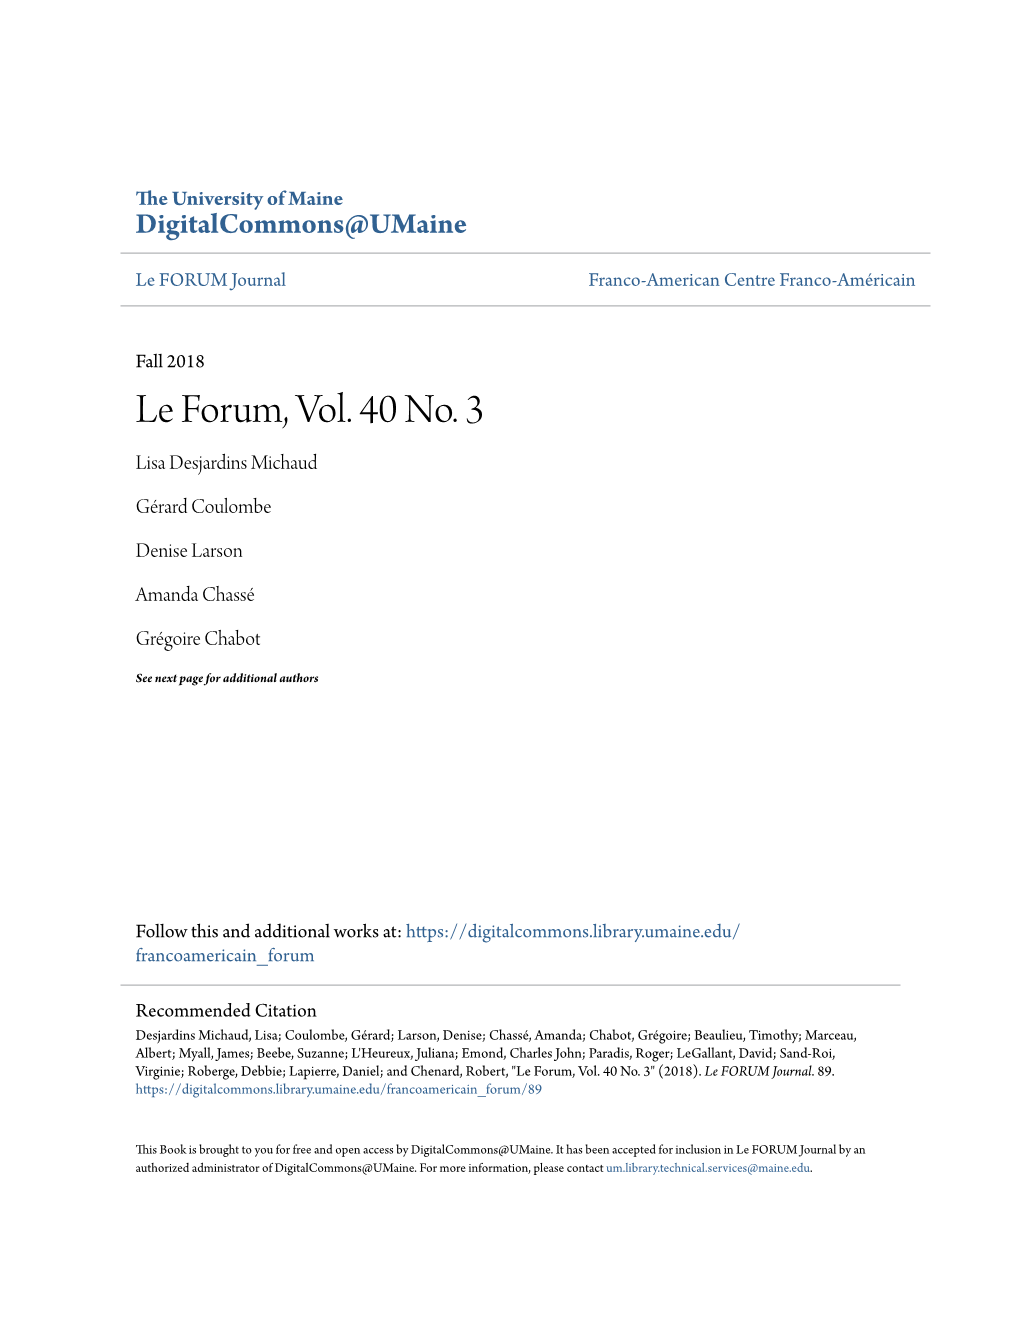 Le Forum, Vol. 40 No. 3 Lisa Desjardins Michaud